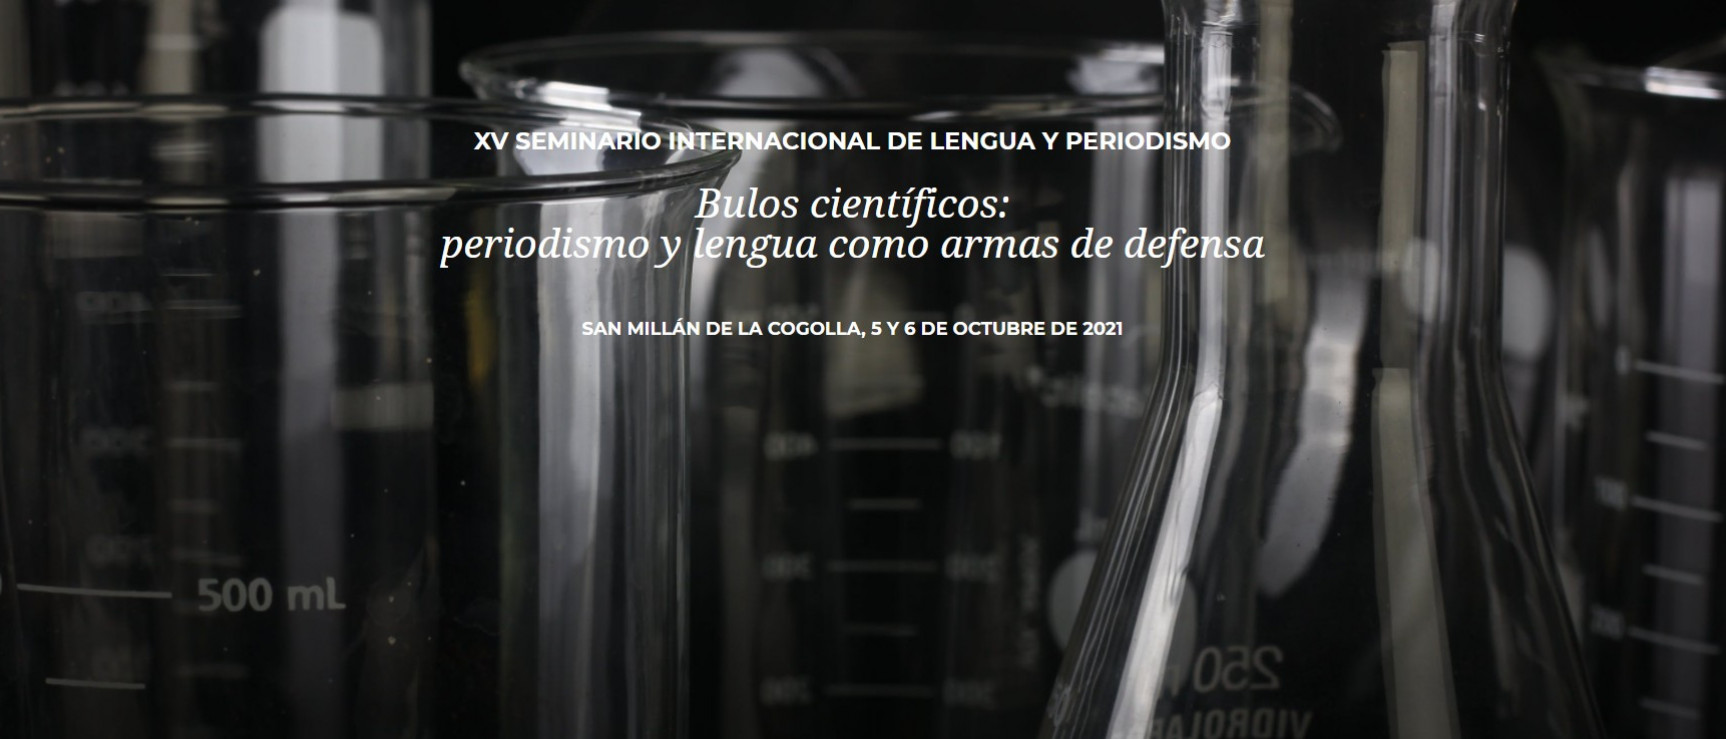 XV SEMINARIO INTERNACIONAL DE LENGUA Y PERIODISMO - Bulos científicos: periodismo y lengua como armas de defensa